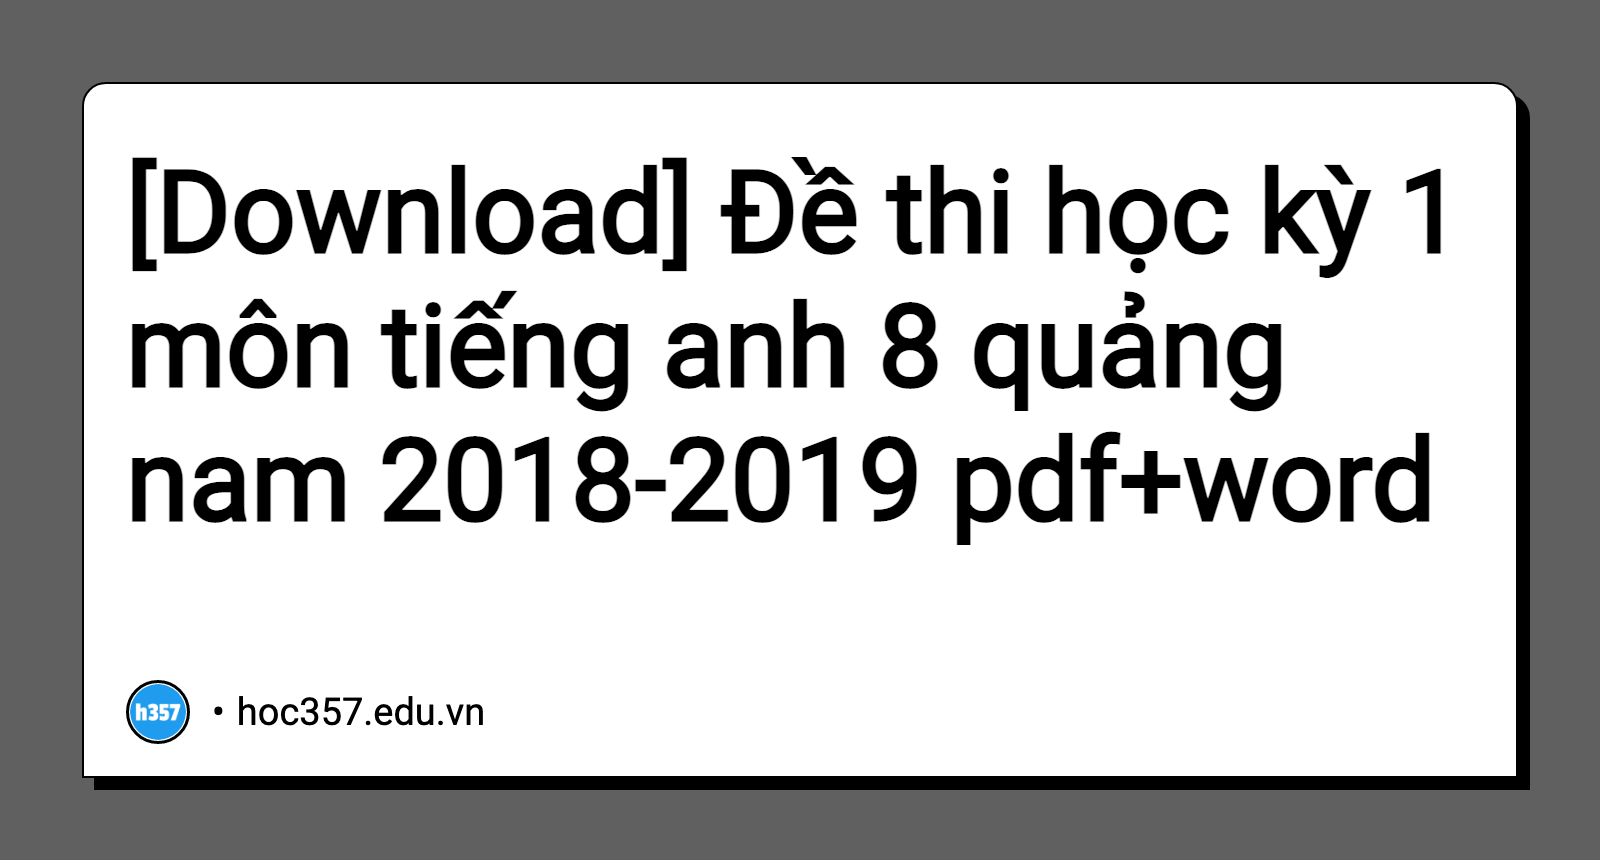 Đề thi học kỳ 1 môn tiếng anh 8 quảng nam 2018-2019